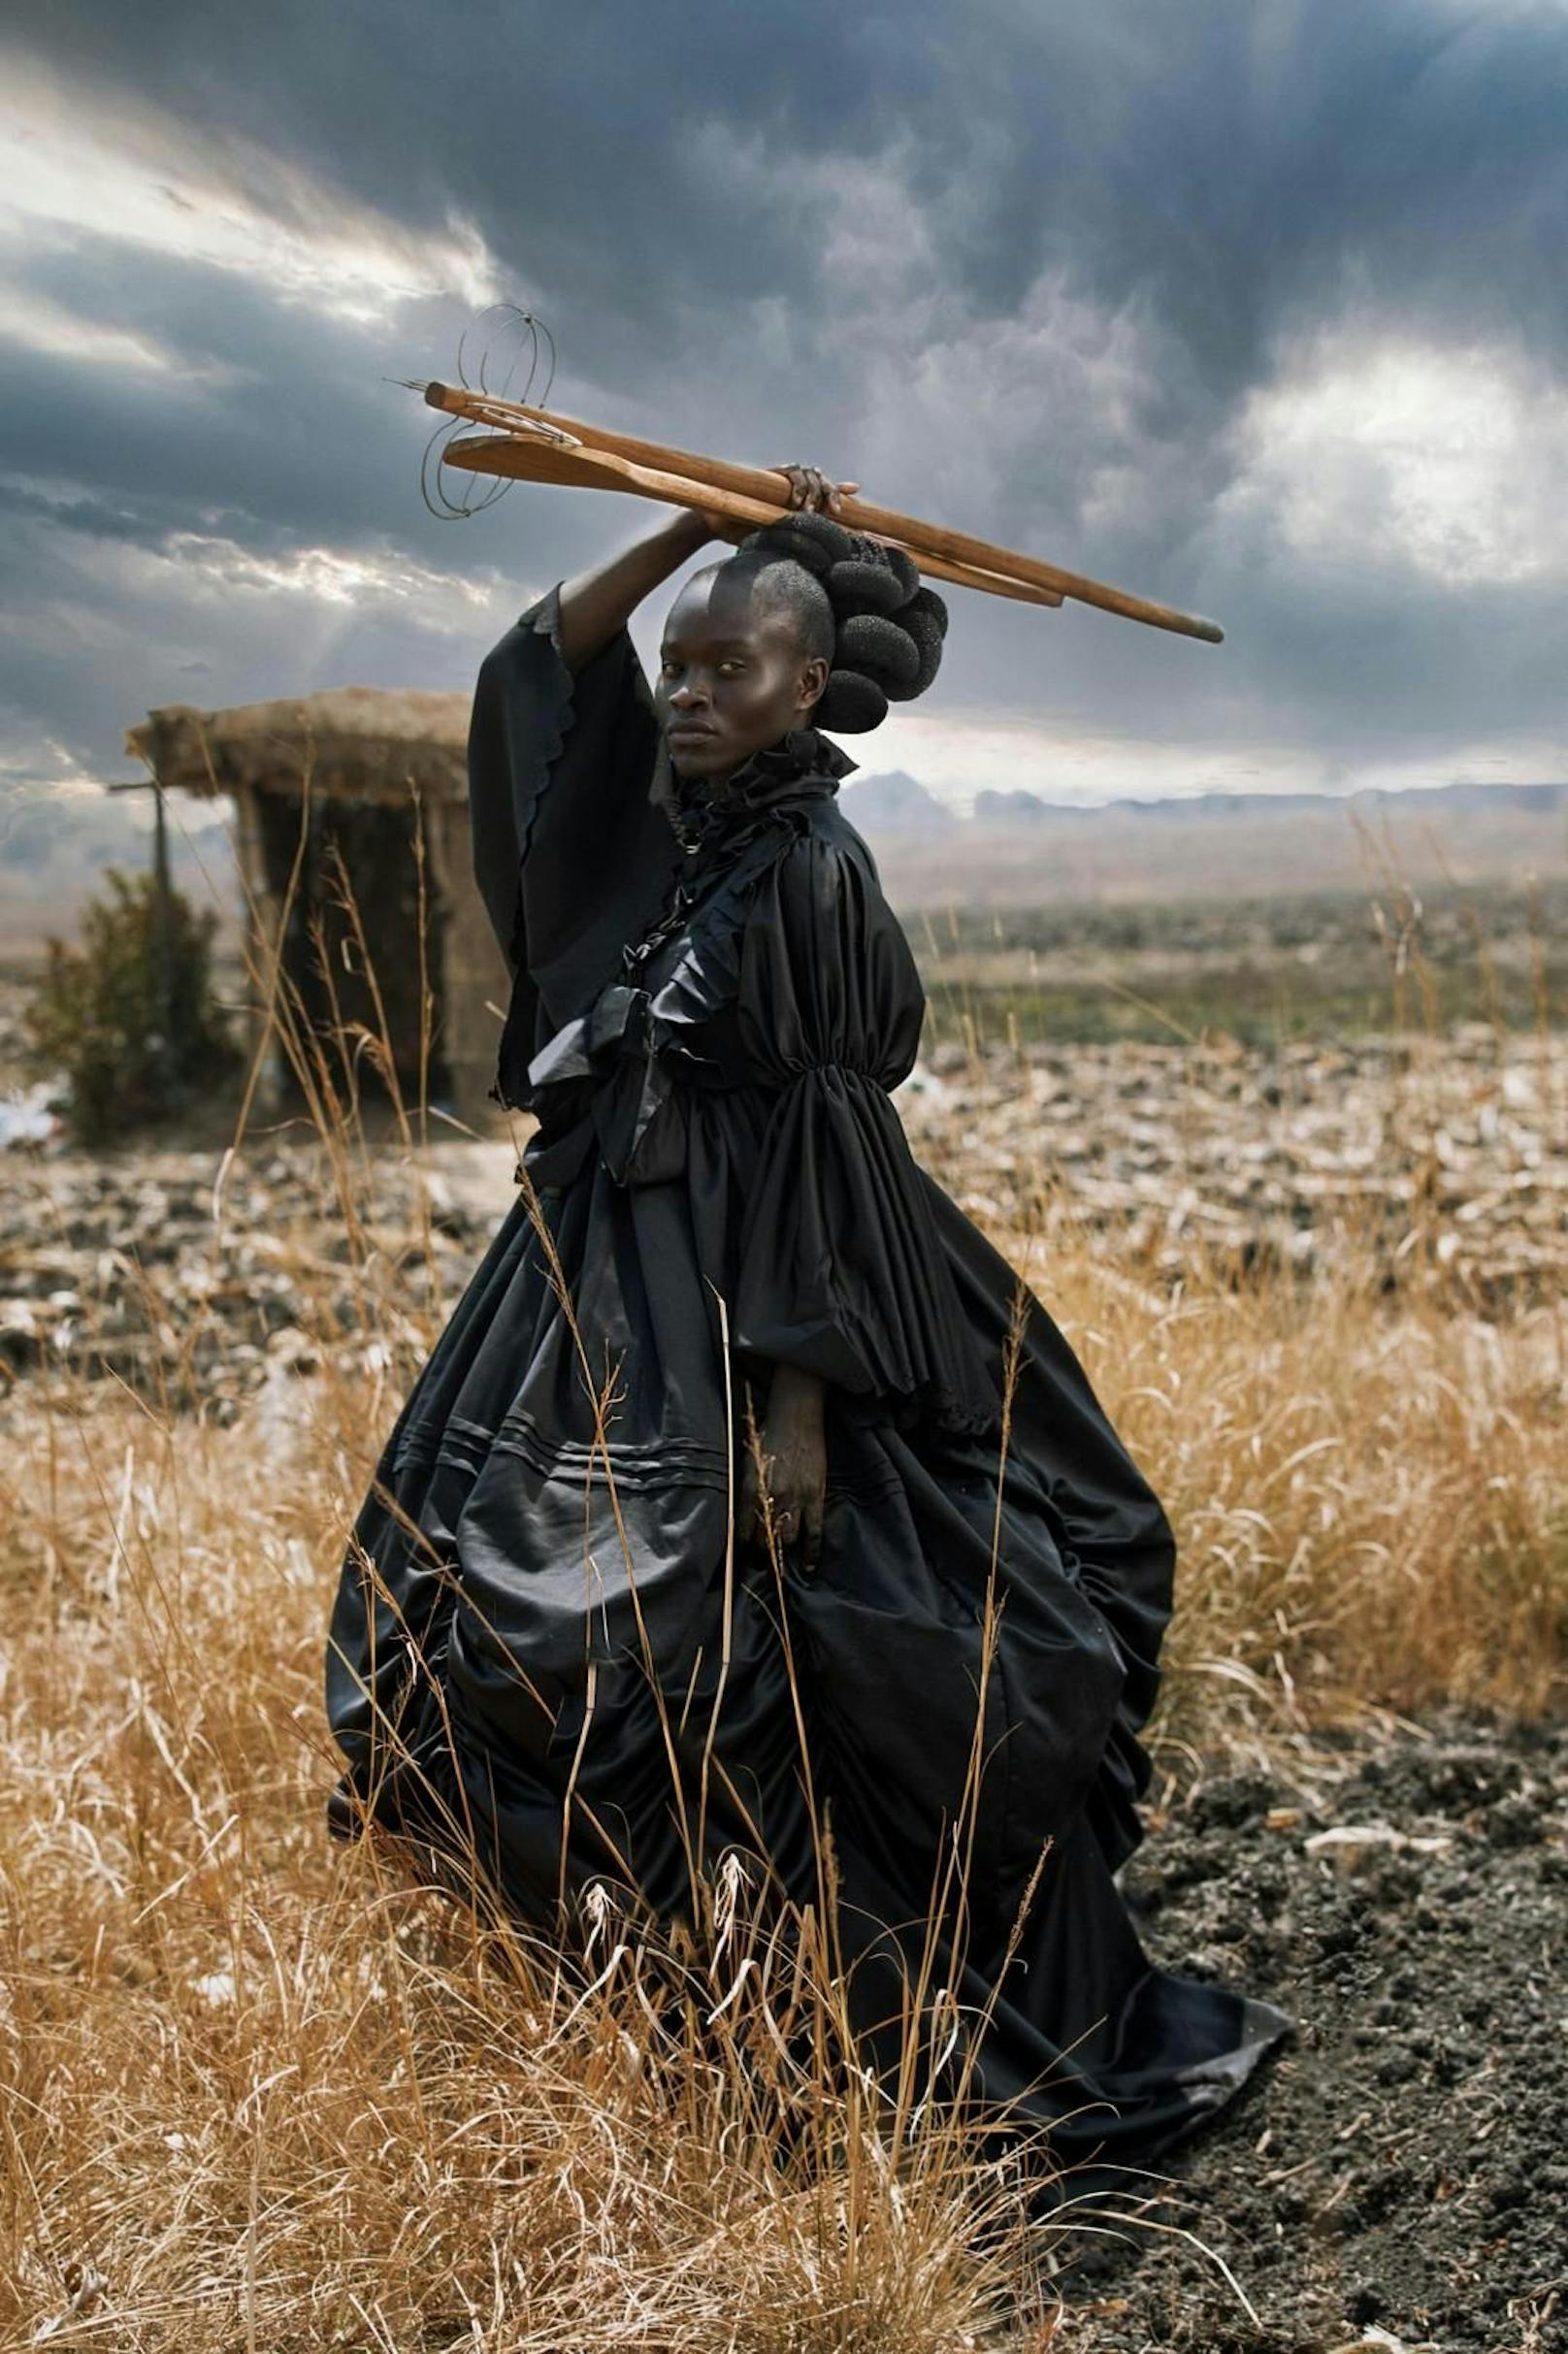 <strong>SWPA "Open Photographer of the Year 2021": Tamary Kudita, Simbabwe.</strong><br> Ihr Porträt "African Victorian", das sie in der Kategorie Kreativ eingereicht hatte, zeigt eine junge schwarze Frau in viktorianischer Kleidung, die traditionelle Shona-Kochutensilien in der Hand hält. Das Bild hinterfragt die stereotype Kontextualisierung des schwarzen weiblichen Körpers und bietet eine alternative visuelle Sprache, durch die eine vielschichtige afrikanische Identität präsentiert wird. Das Porträt sei "eine Hommage an das Heute, das zugleich in der Geschichte wurzelt", so Kudita.